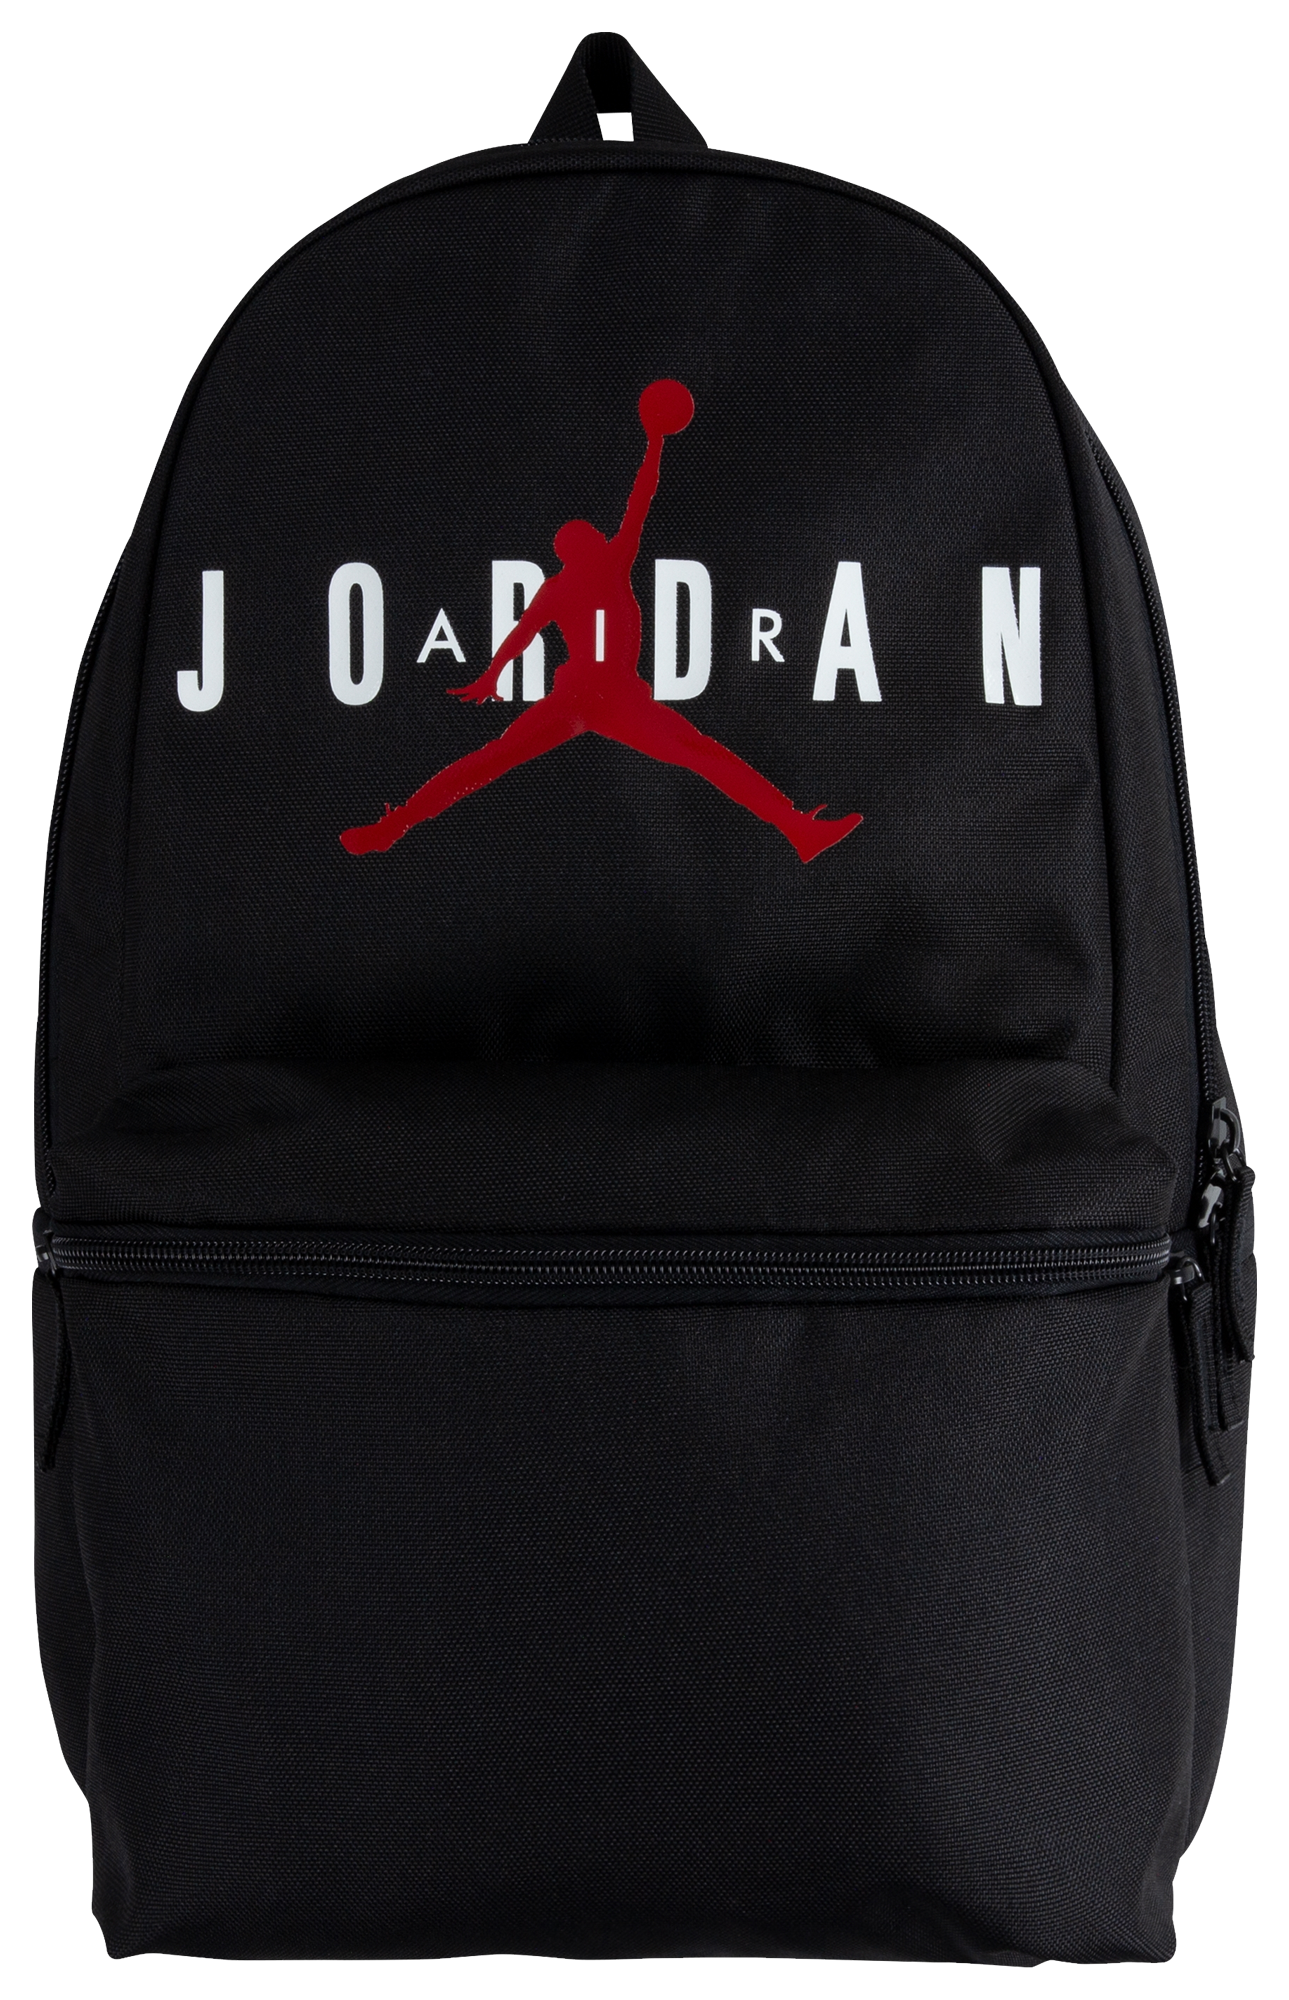 cheap air jordan backpacks